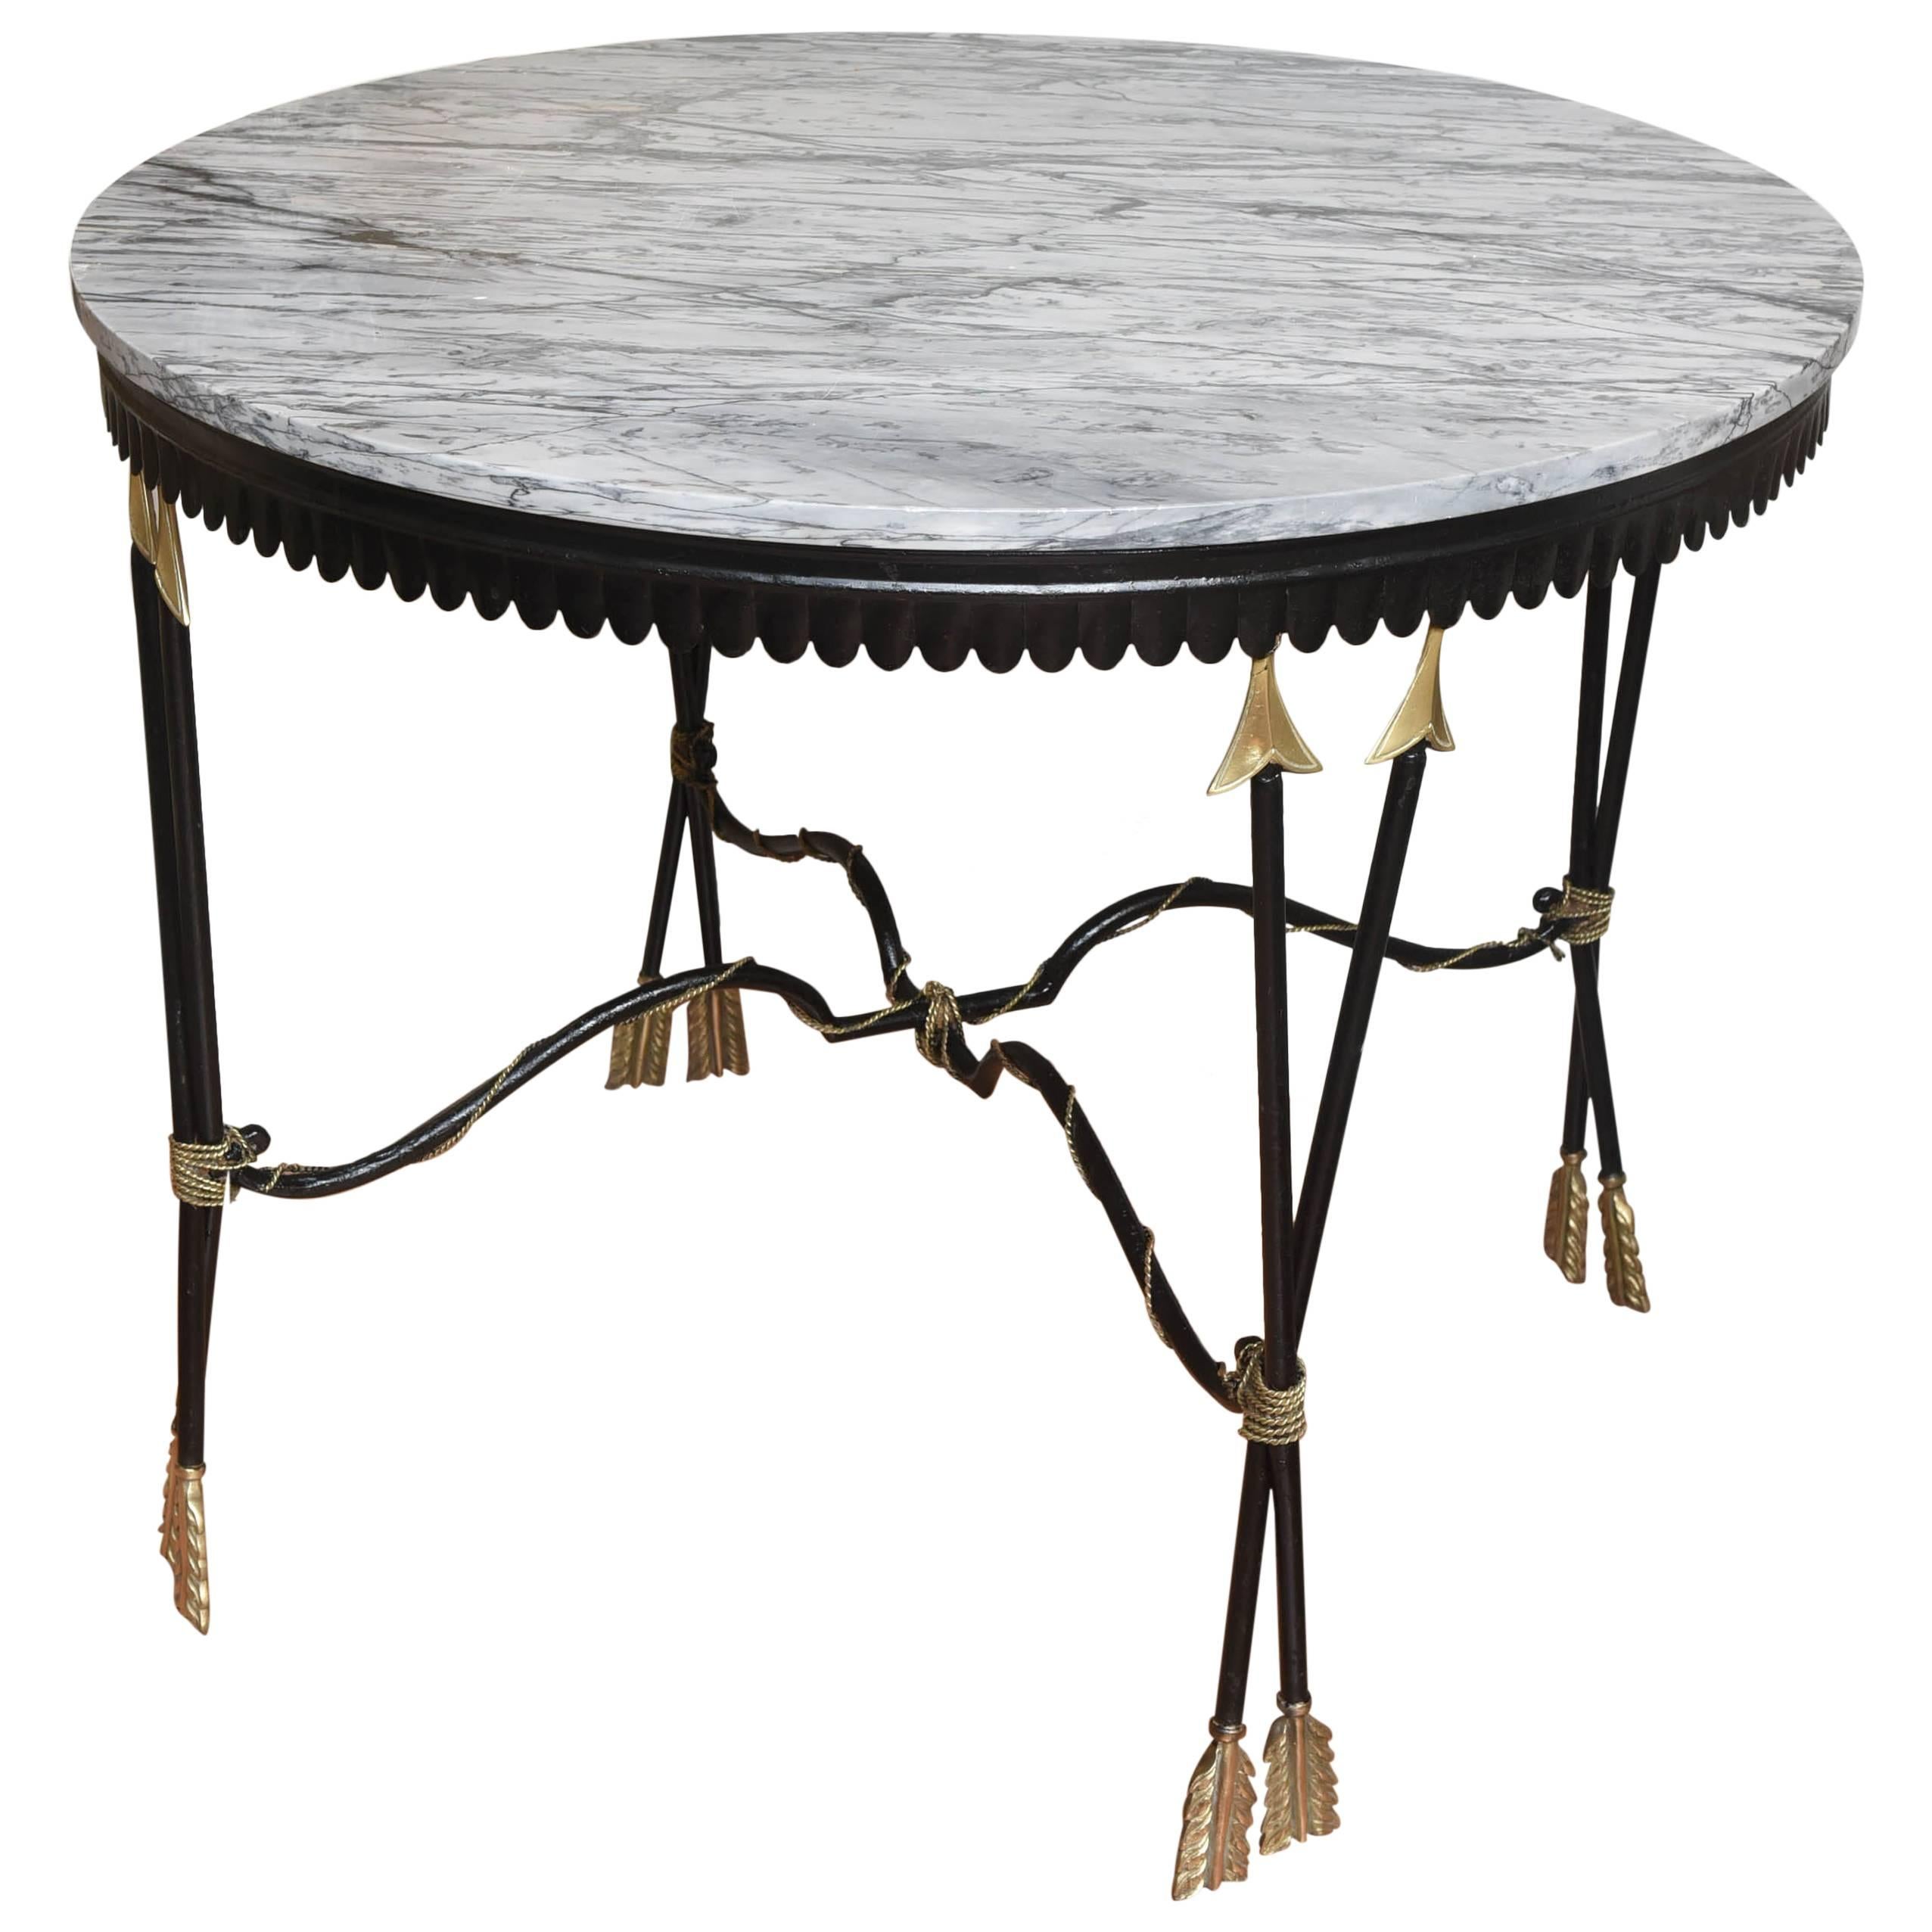 Table centrale néoclassique à flèches croisées avec plateau en marbre